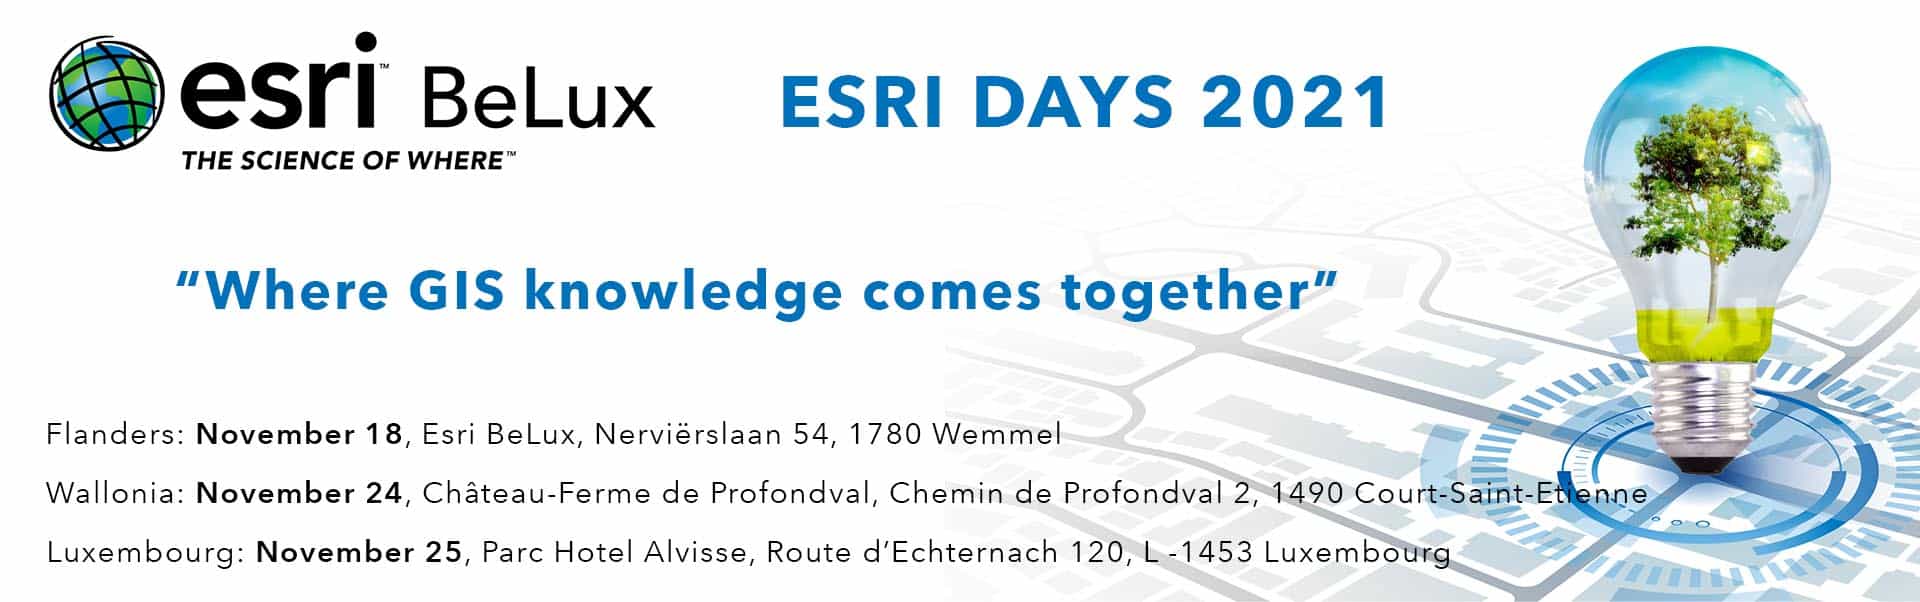 webssite banner Esri Days 2021